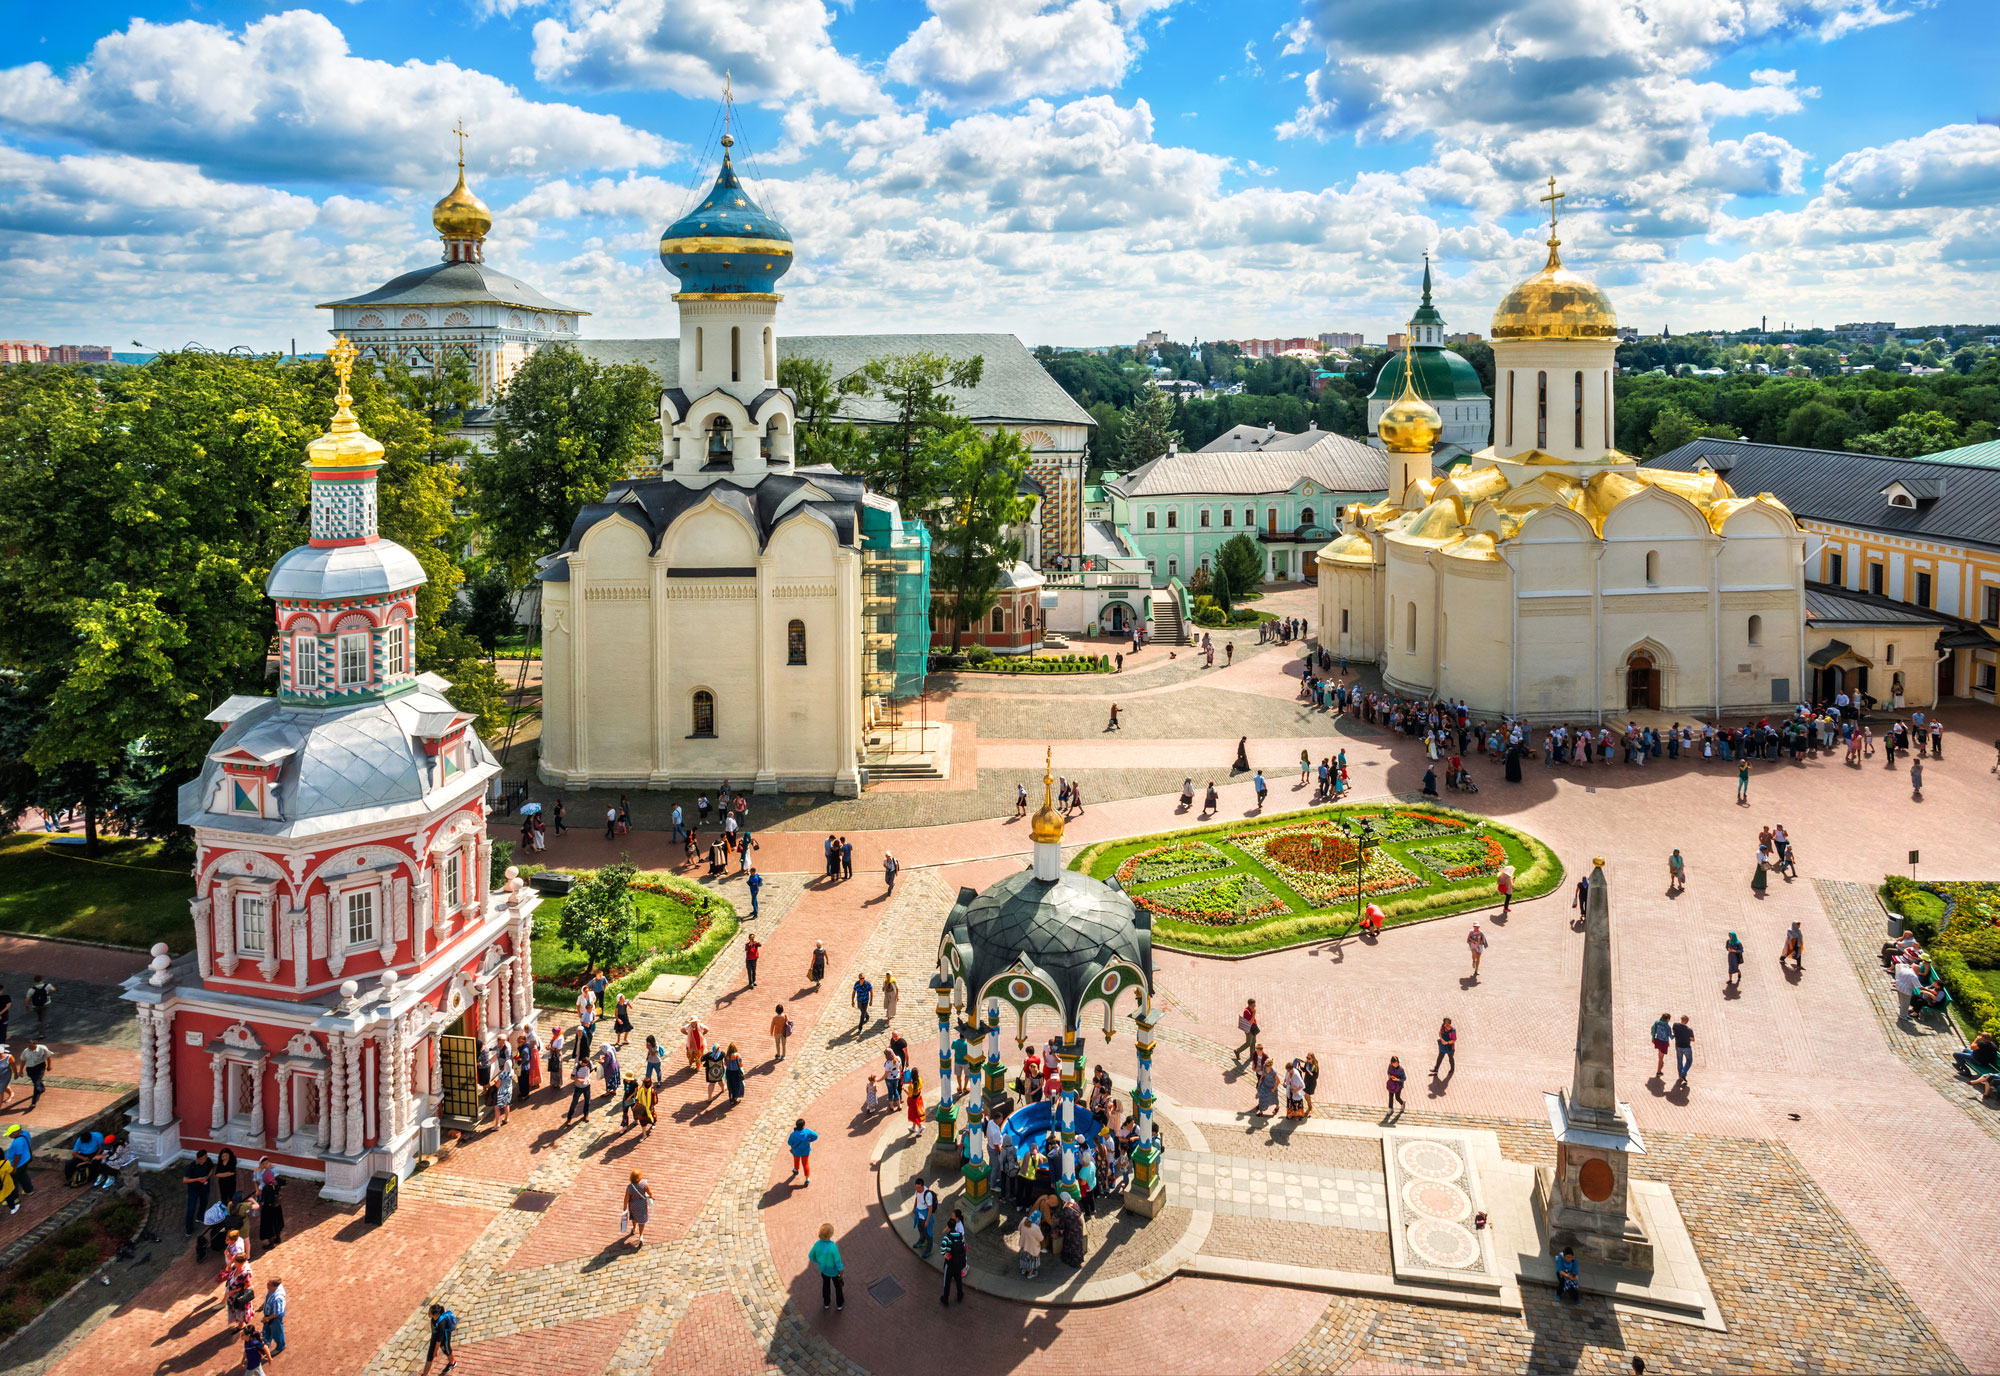 Ver el monasterio de San Sergio en Sergiev posad, a 70 kilómetros de Moscú